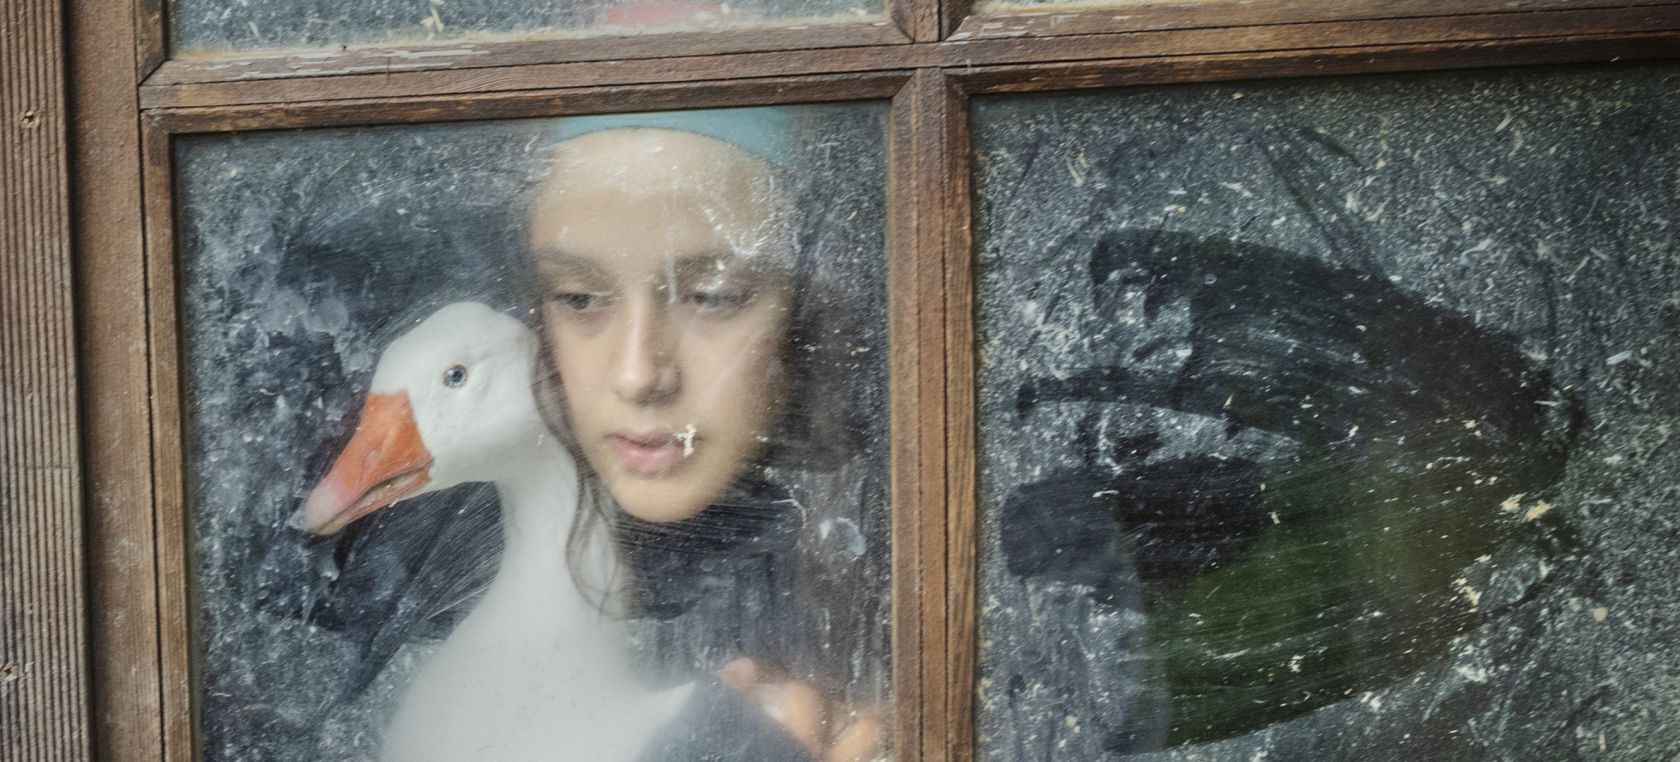 La fotógrafa Ana Palacios sobre nuestra relación con los animales: “Con mis fotos busco generar empatía”